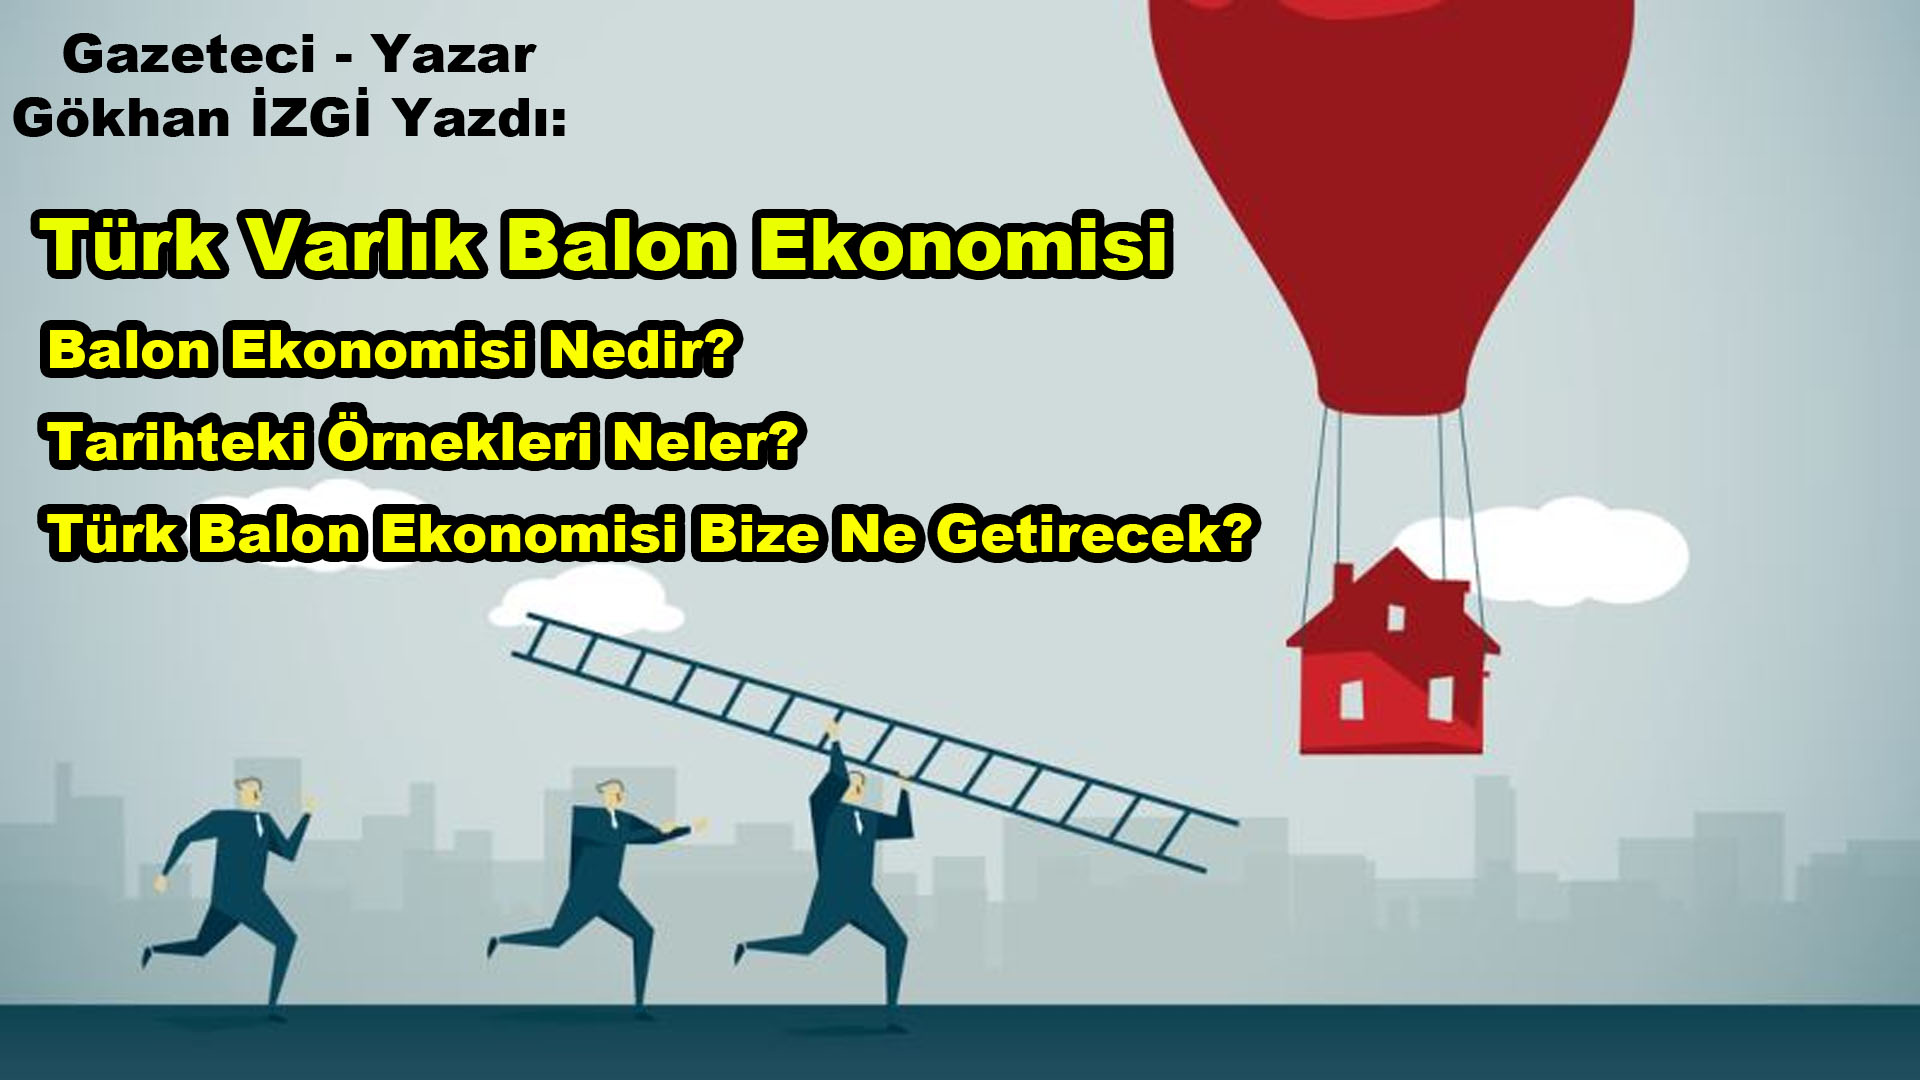 Gökhan İzgi Yazdı: Türk Varlık Balon Ekonomisi